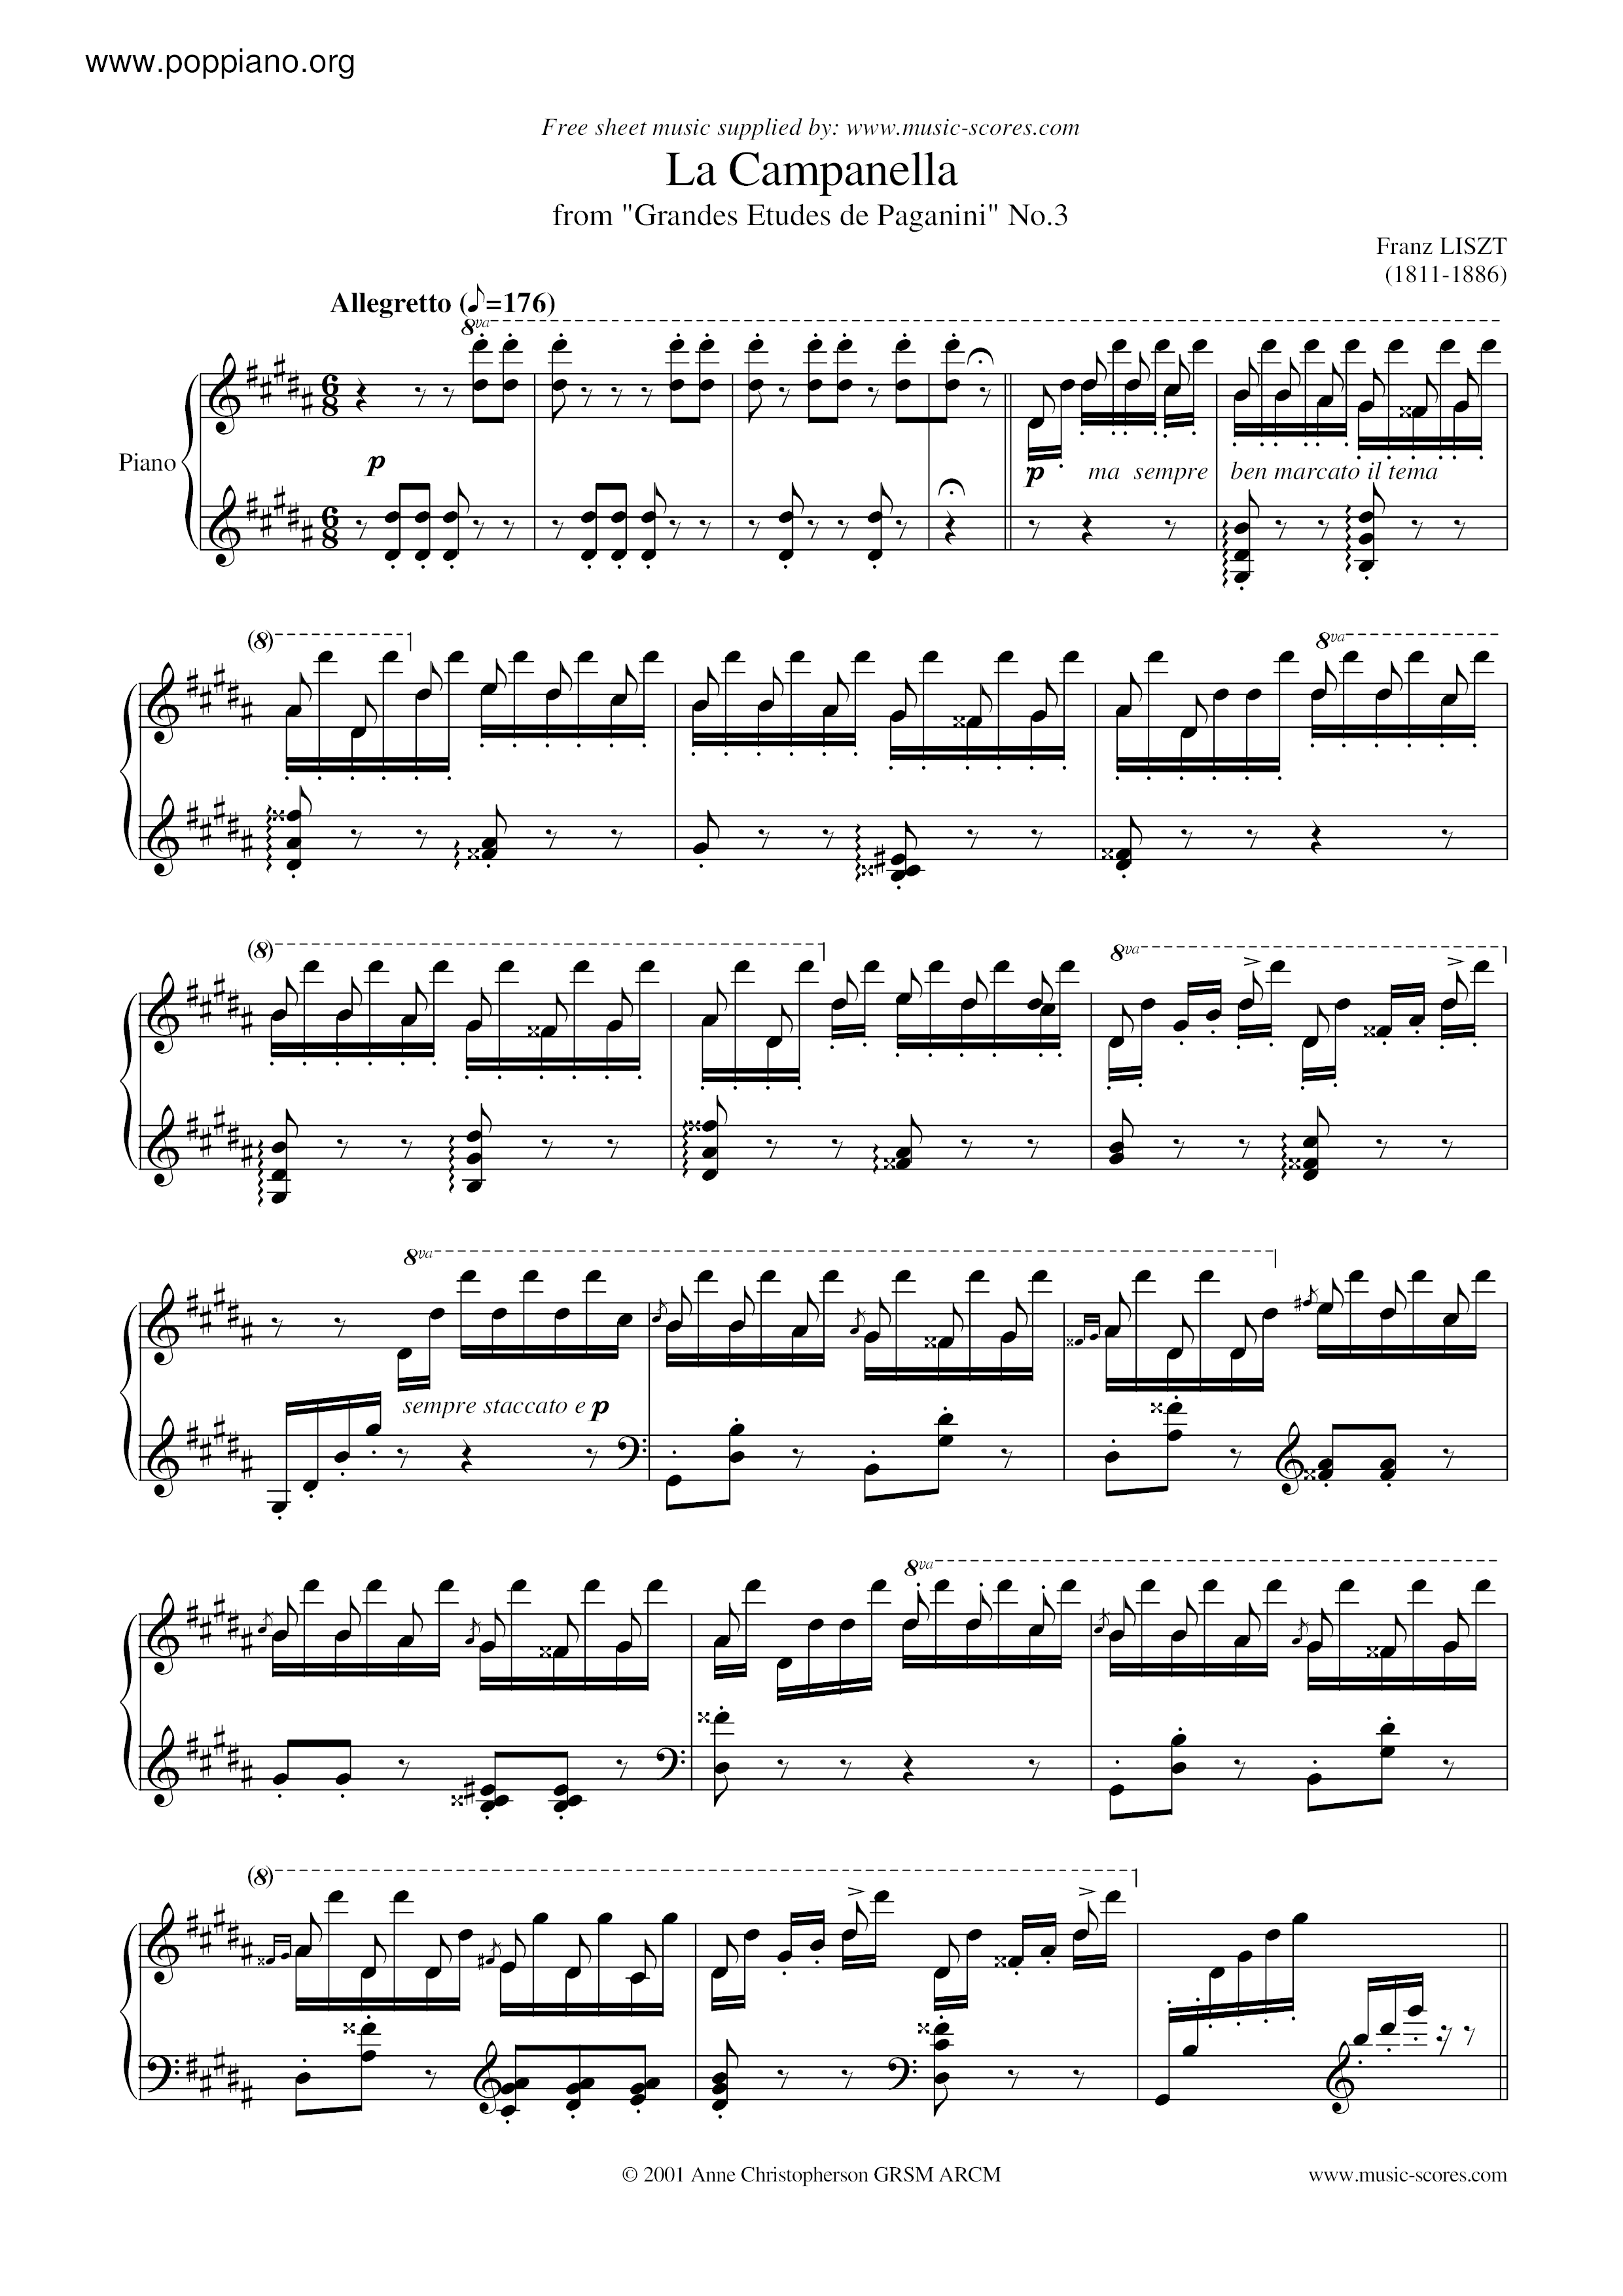 La campanella in G-Sharp Minor (From Grandes études de Paganini, S. 141 / 3) Score